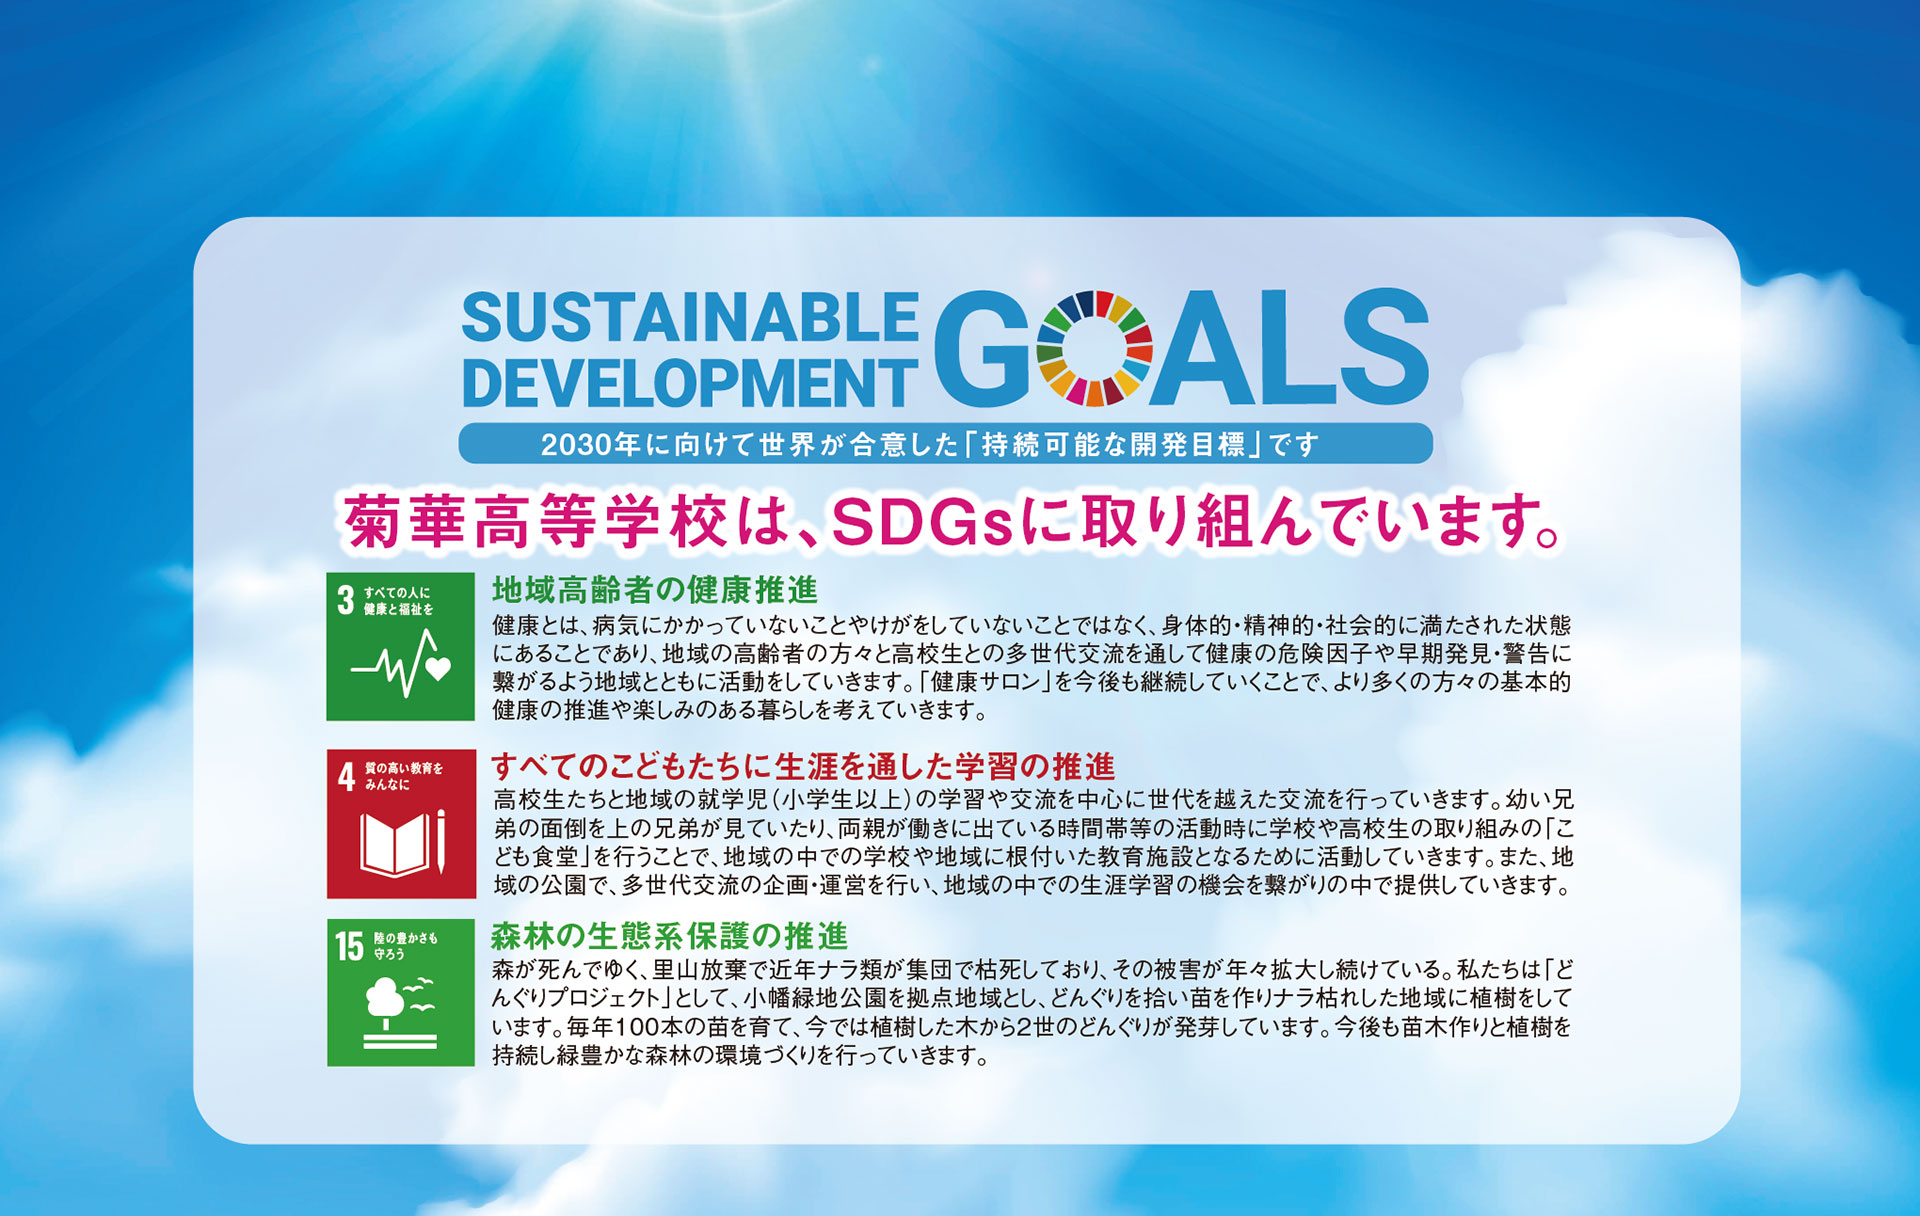 菊華高等学校は、SDGsに取り組んでいます。